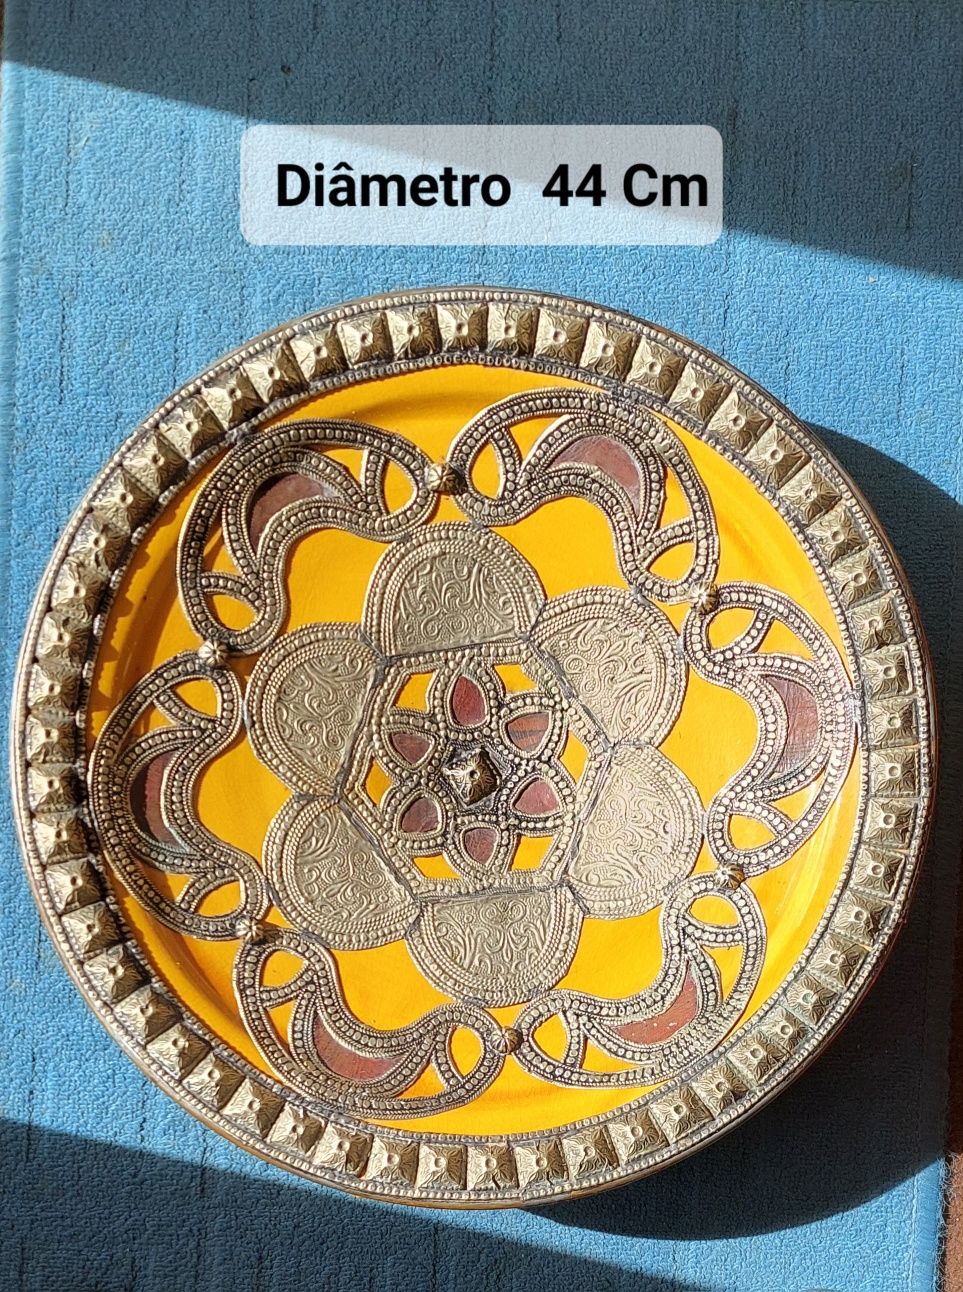 Prato decorativo origem México, com embutidos de latão e pele.